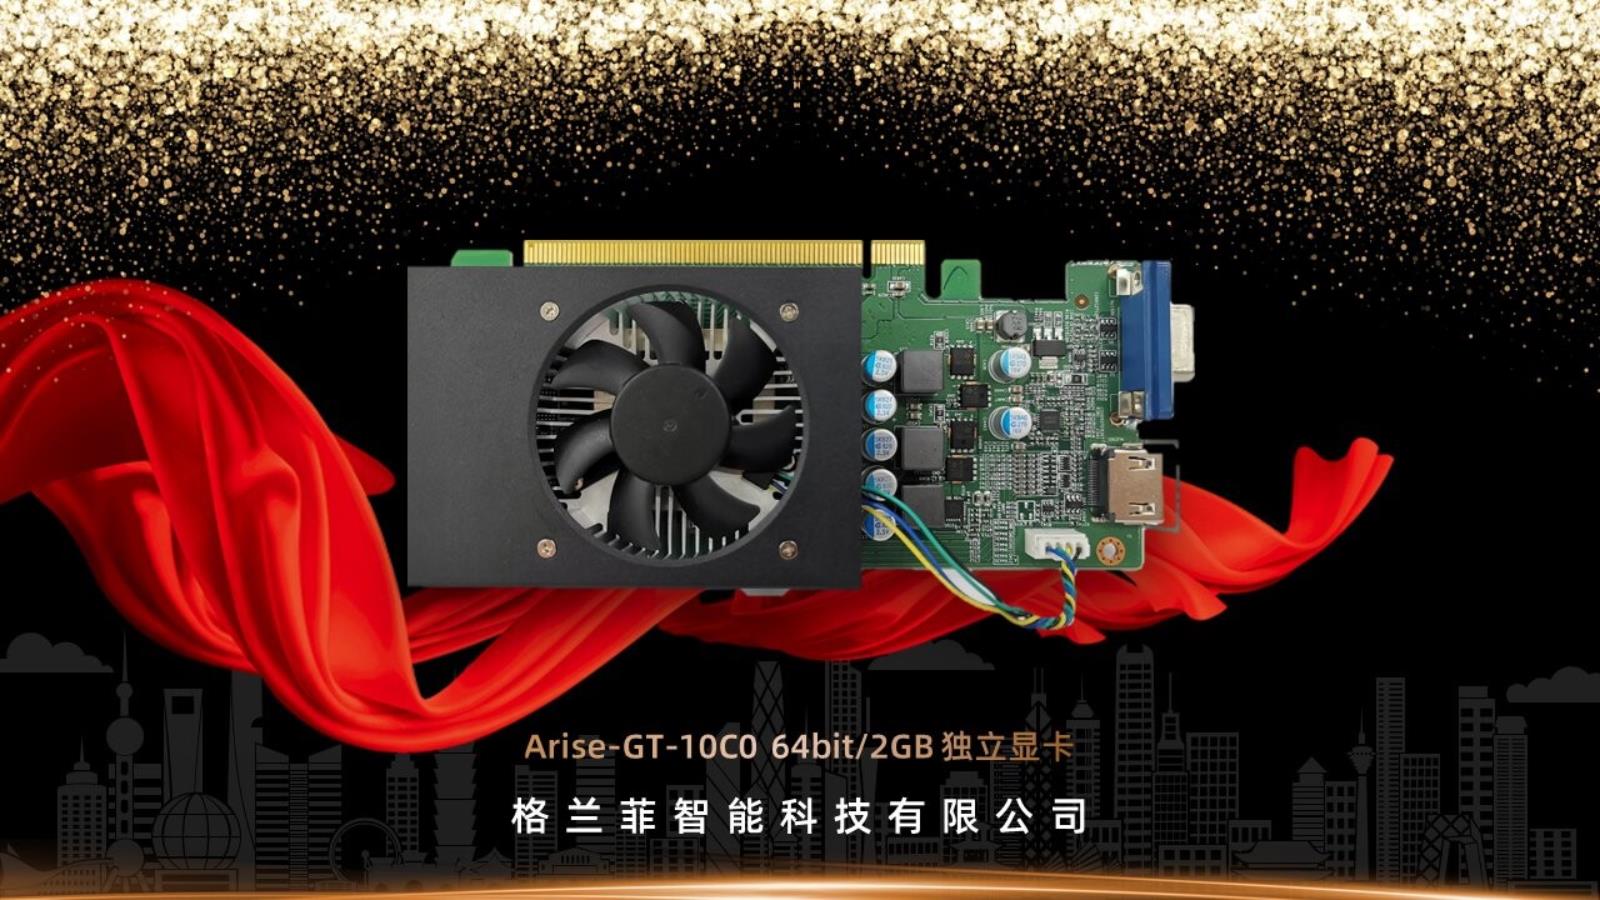 szczegóły chińskiej karty Arise-GT10C0, Genfly, Arise-GT10C0,